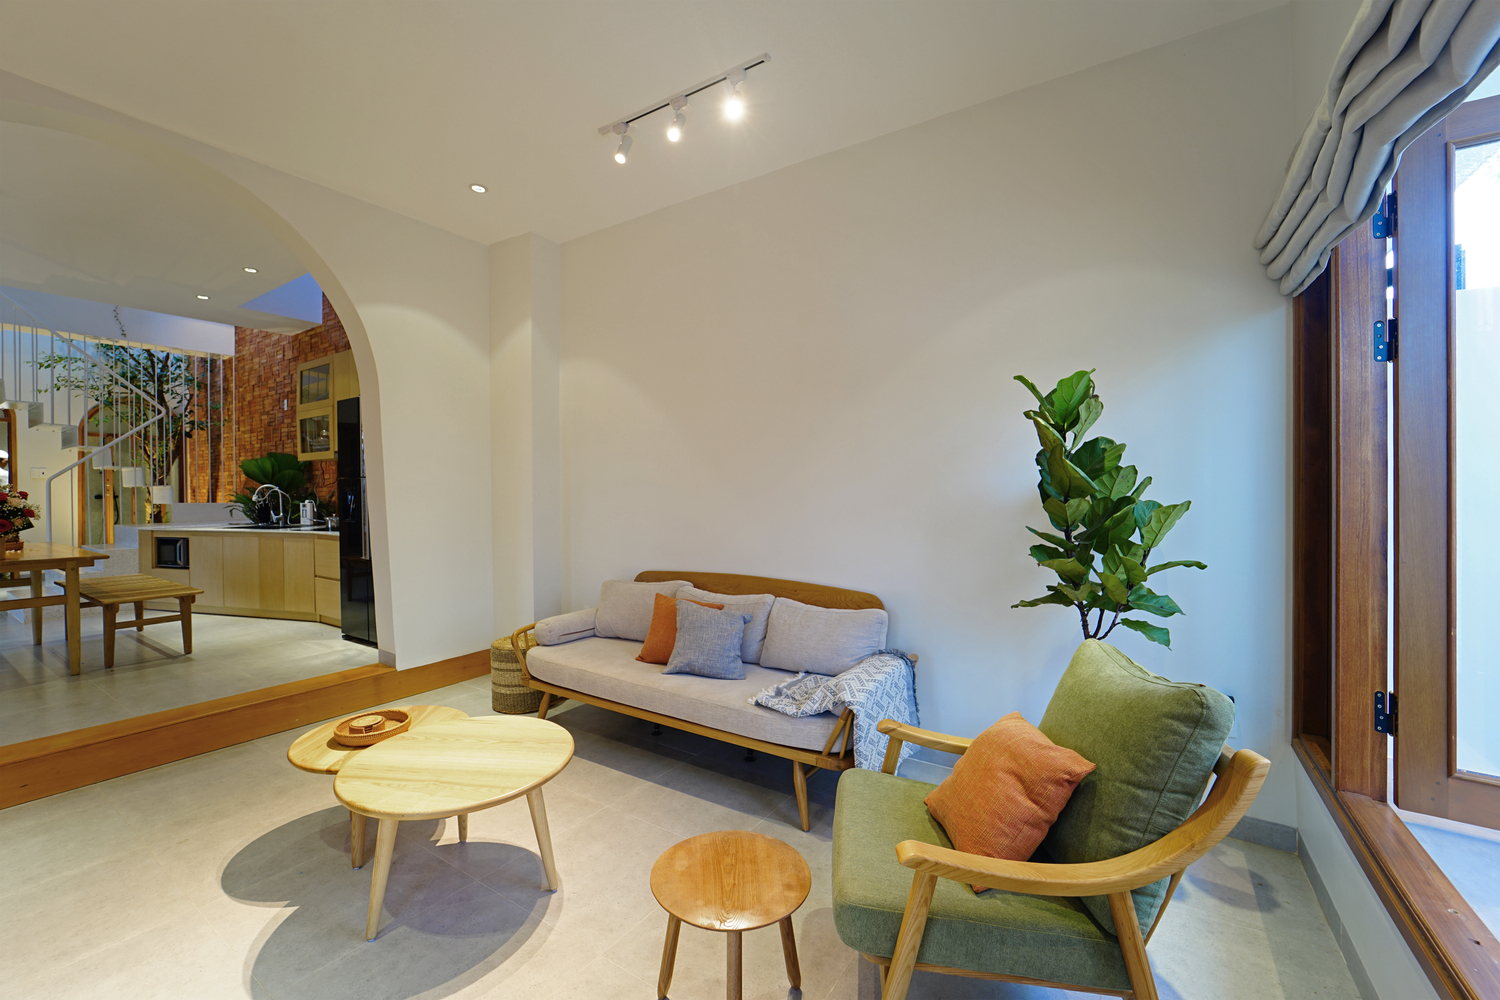 hình ảnh phòng khách nhà phố với tường sơn trắng, bàn trà gỗ đôi hình tròn, sofa gỗ lót đệm màu xám và xanh nõn chuối